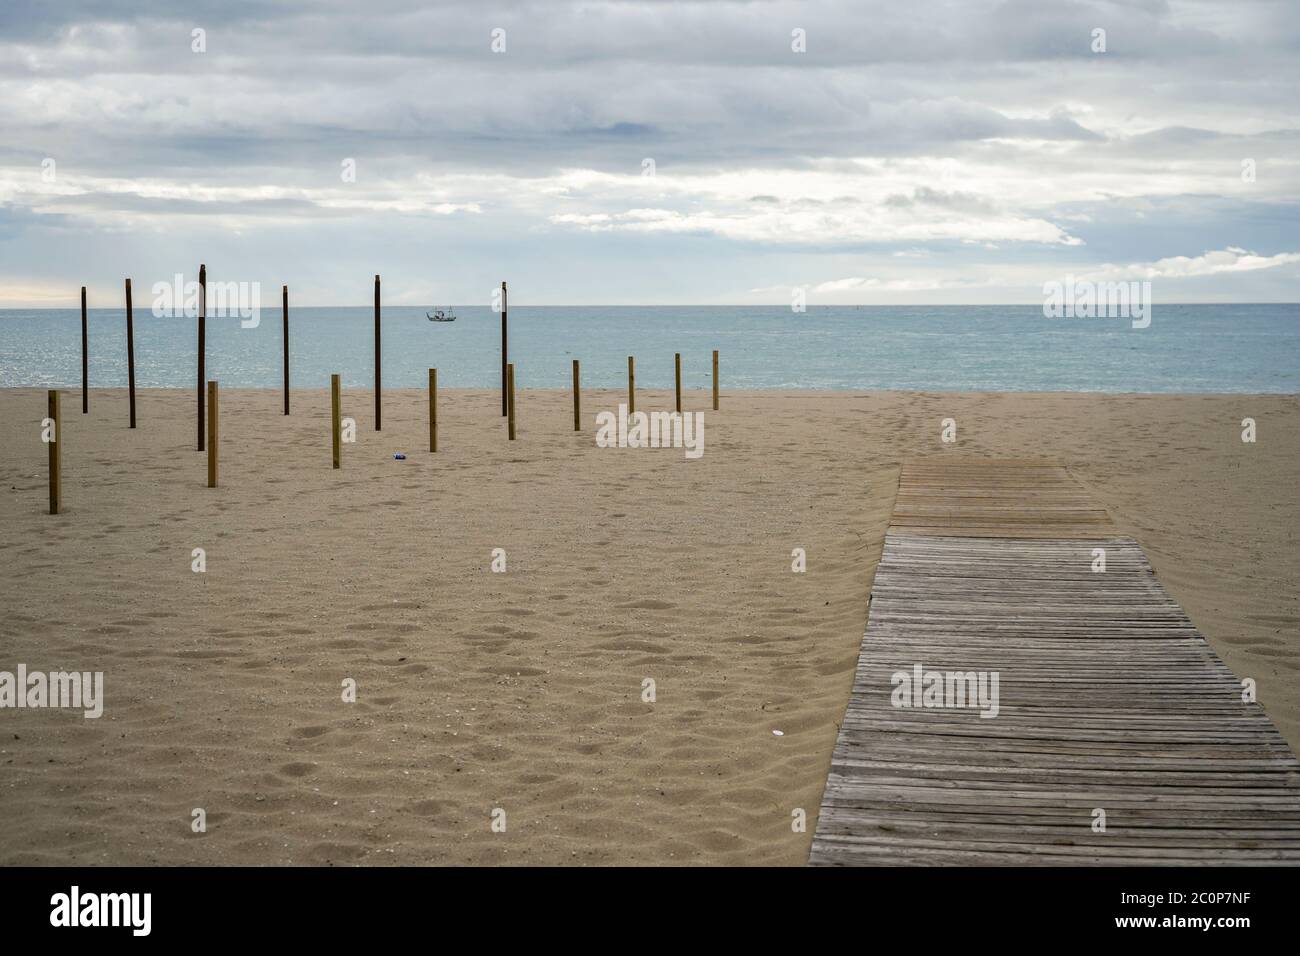 Spiaggia vuota nel giugno 2020 a causa delle restrizioni di Covid 19, Fuengirola, Costa del sol, Spagna Foto Stock